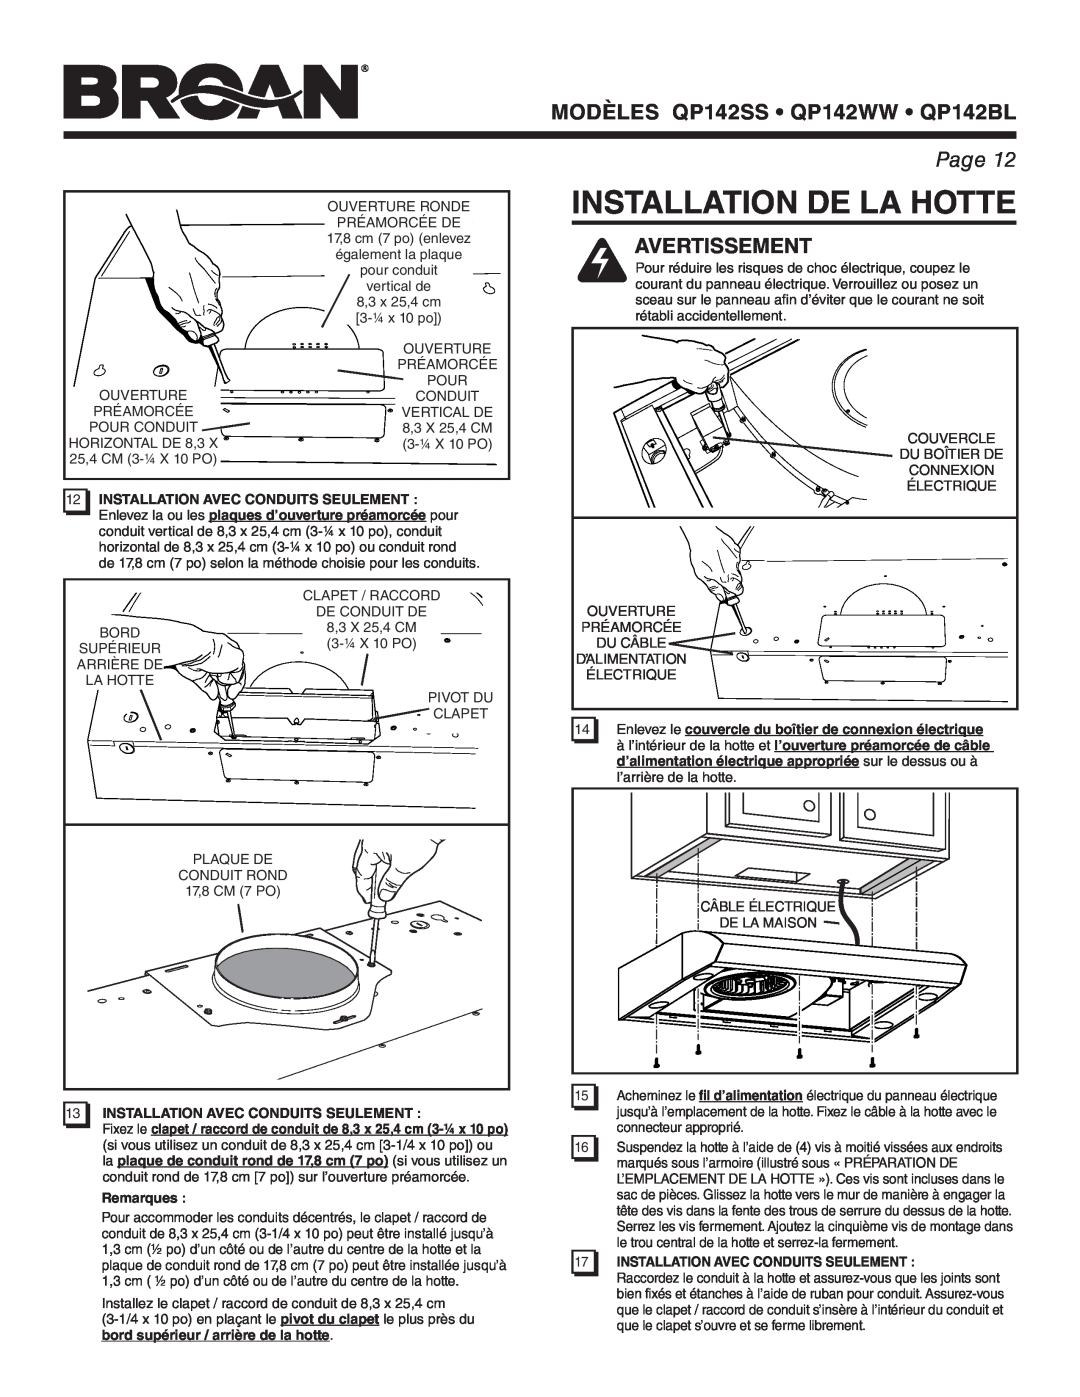 Broan manual Installation De La Hotte, Avertissement, MODÈLES QP142SS QP142WW QP142BL, Page, Remarques 